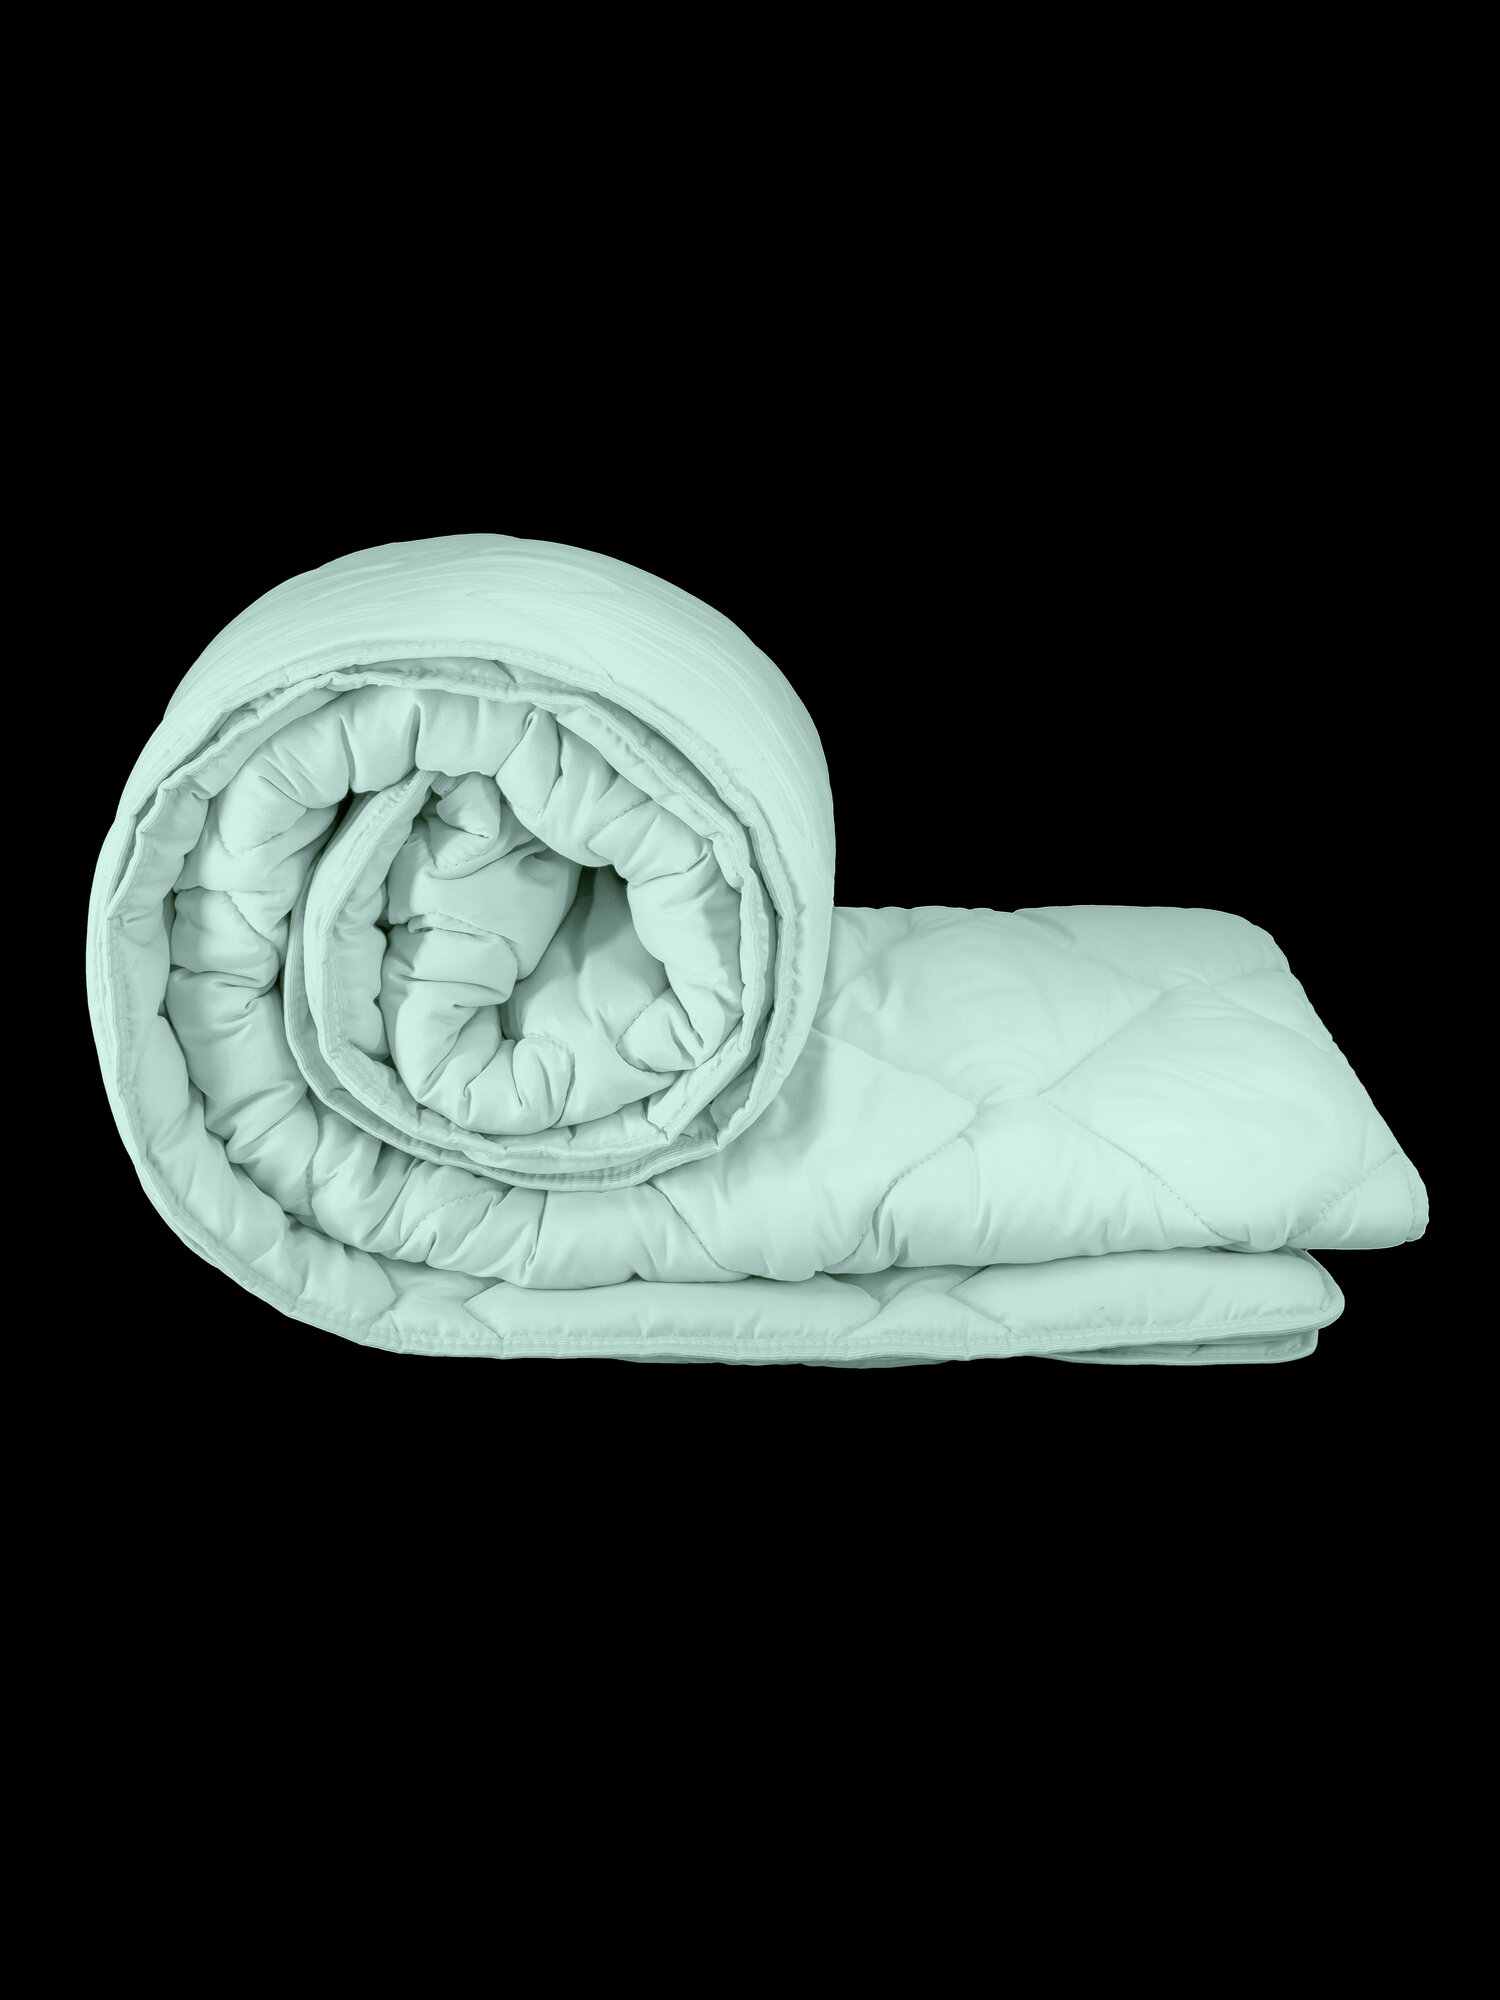 Одеяло Непроспи "Эвкалипт" 1,5 - спальное 140х205 см / Всесезонное, теплое, стеганое одеяло из эвкалиптового волокна